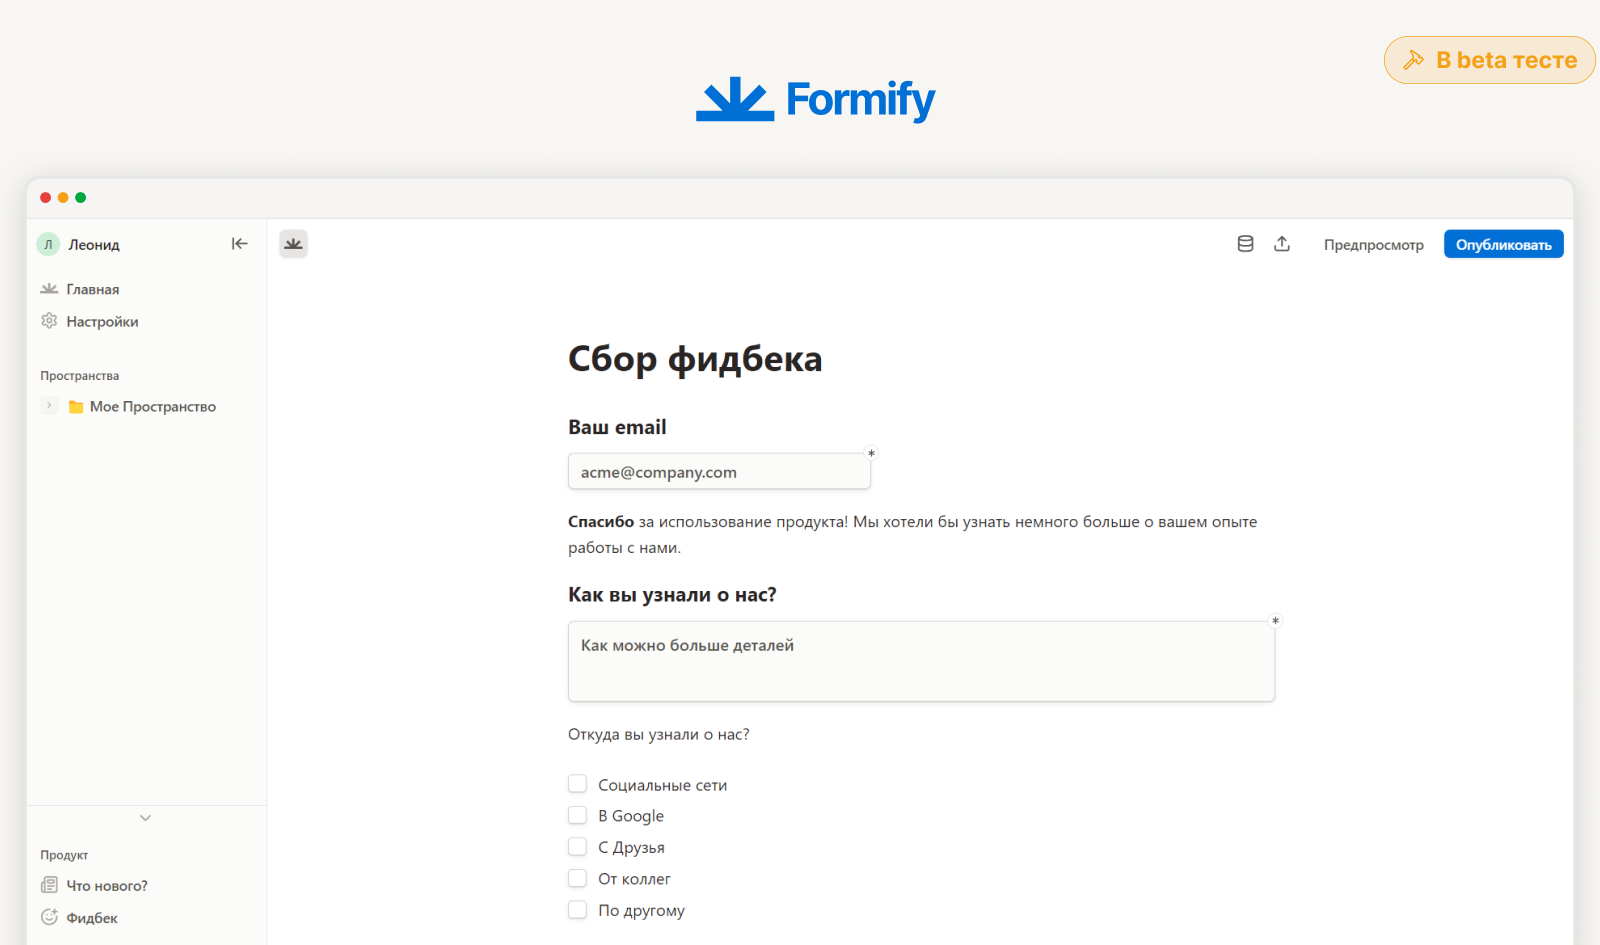 Как было бы здорово, если бы Formify был открыт в вашем браузере :)  